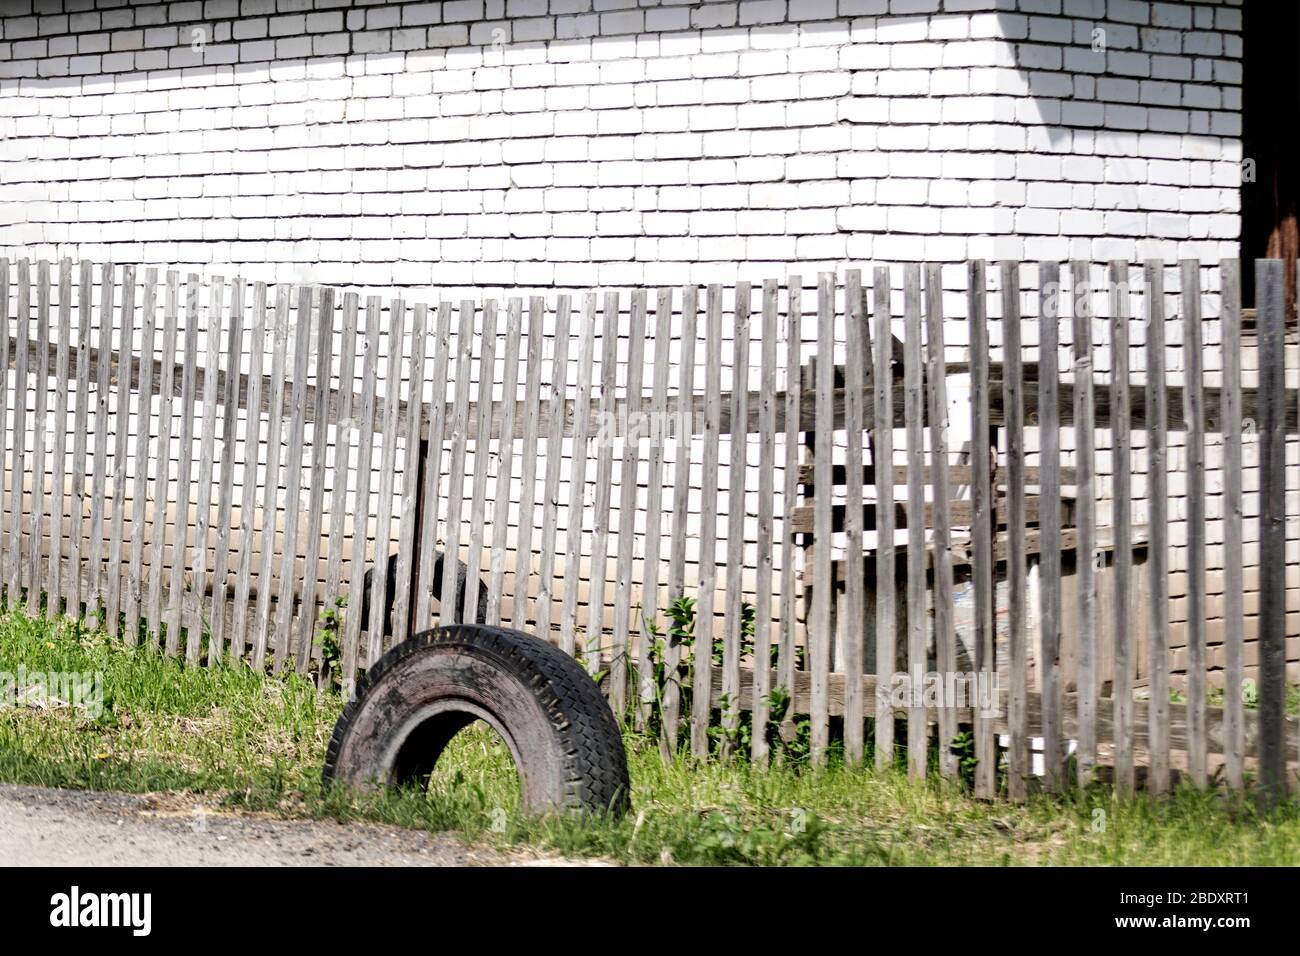 Une vieille clôture en bois gris de promenade avec des planches parallèles et un pneu usagé sur l'herbe verte devant un mur de brique blanche, lors d'une journée ensoleillée et brillante. A con Banque D'Images